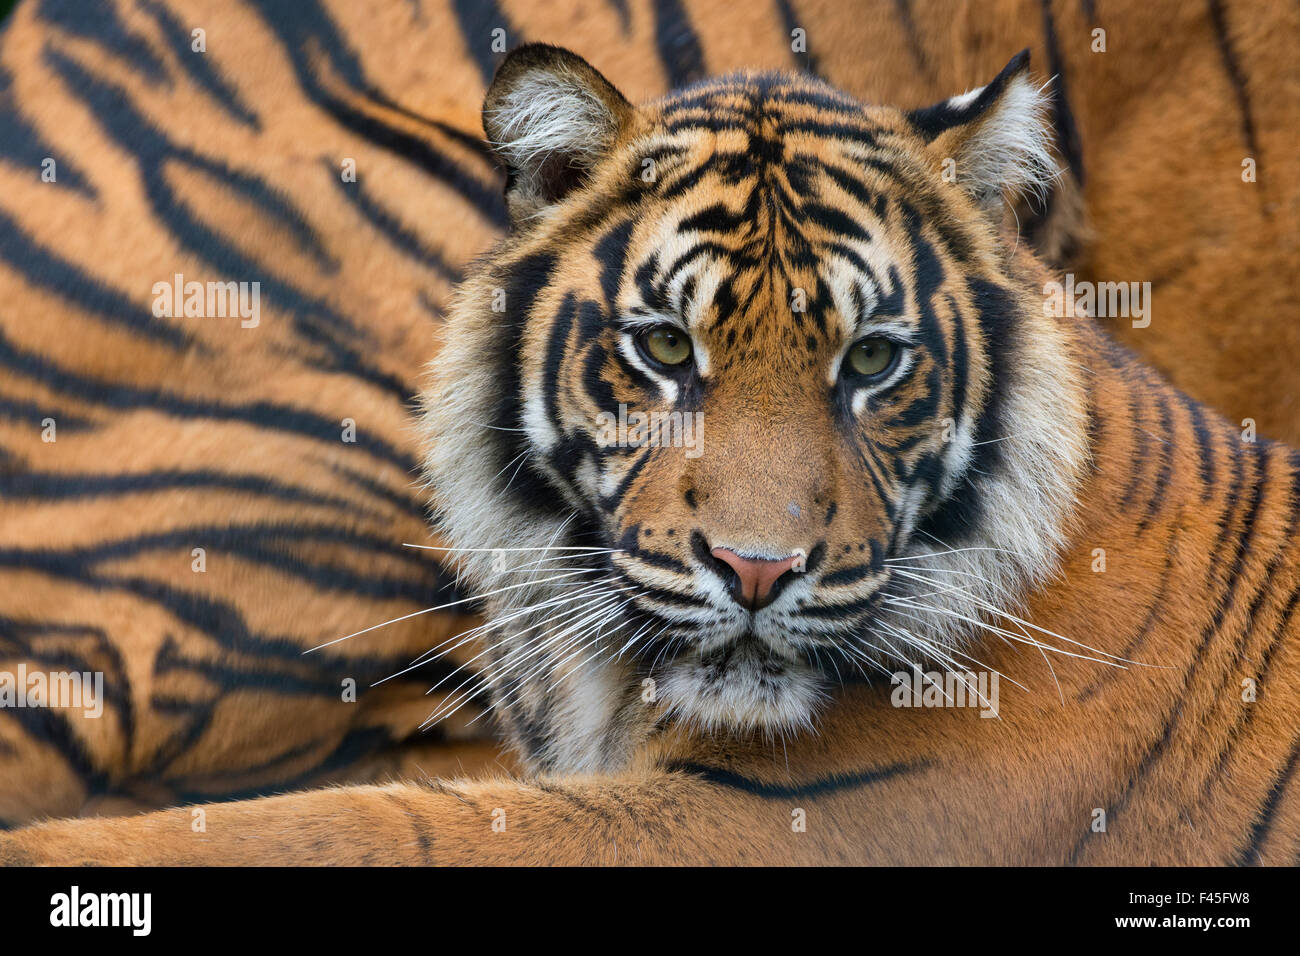 Tigre de Sumatra (Panthera tigris sumatrae), se produit à Sumatra, Indonésie Banque D'Images